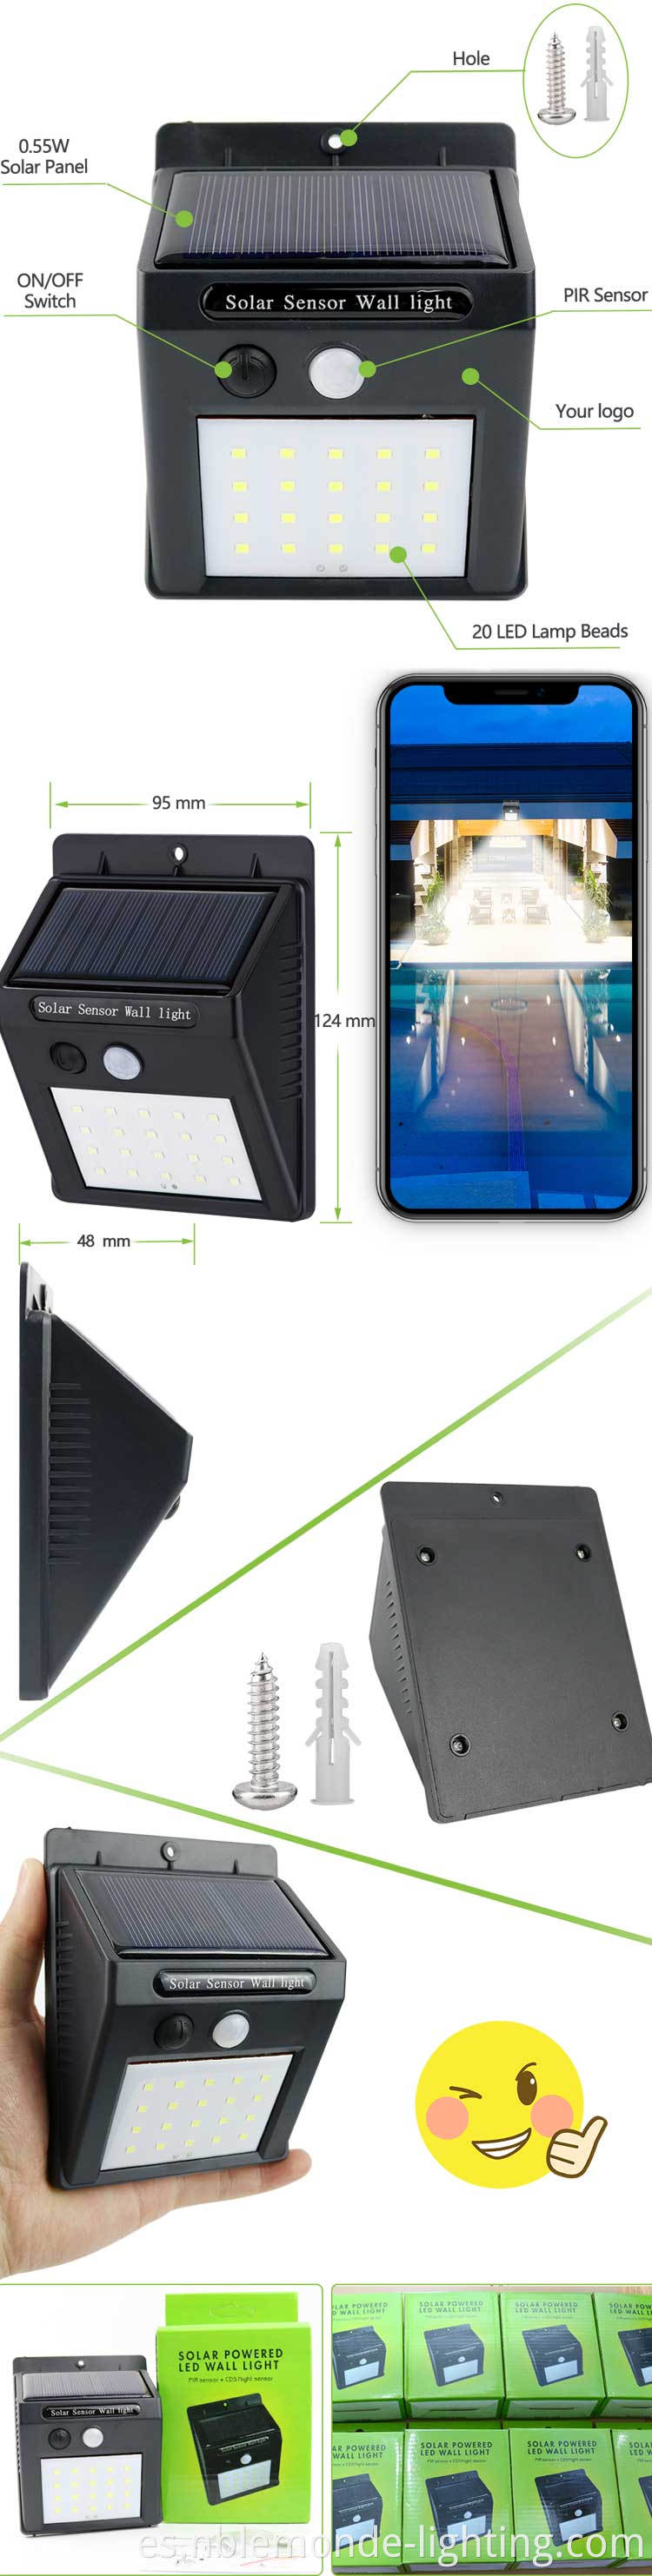 Solar Sensor Outdoor Wall Light